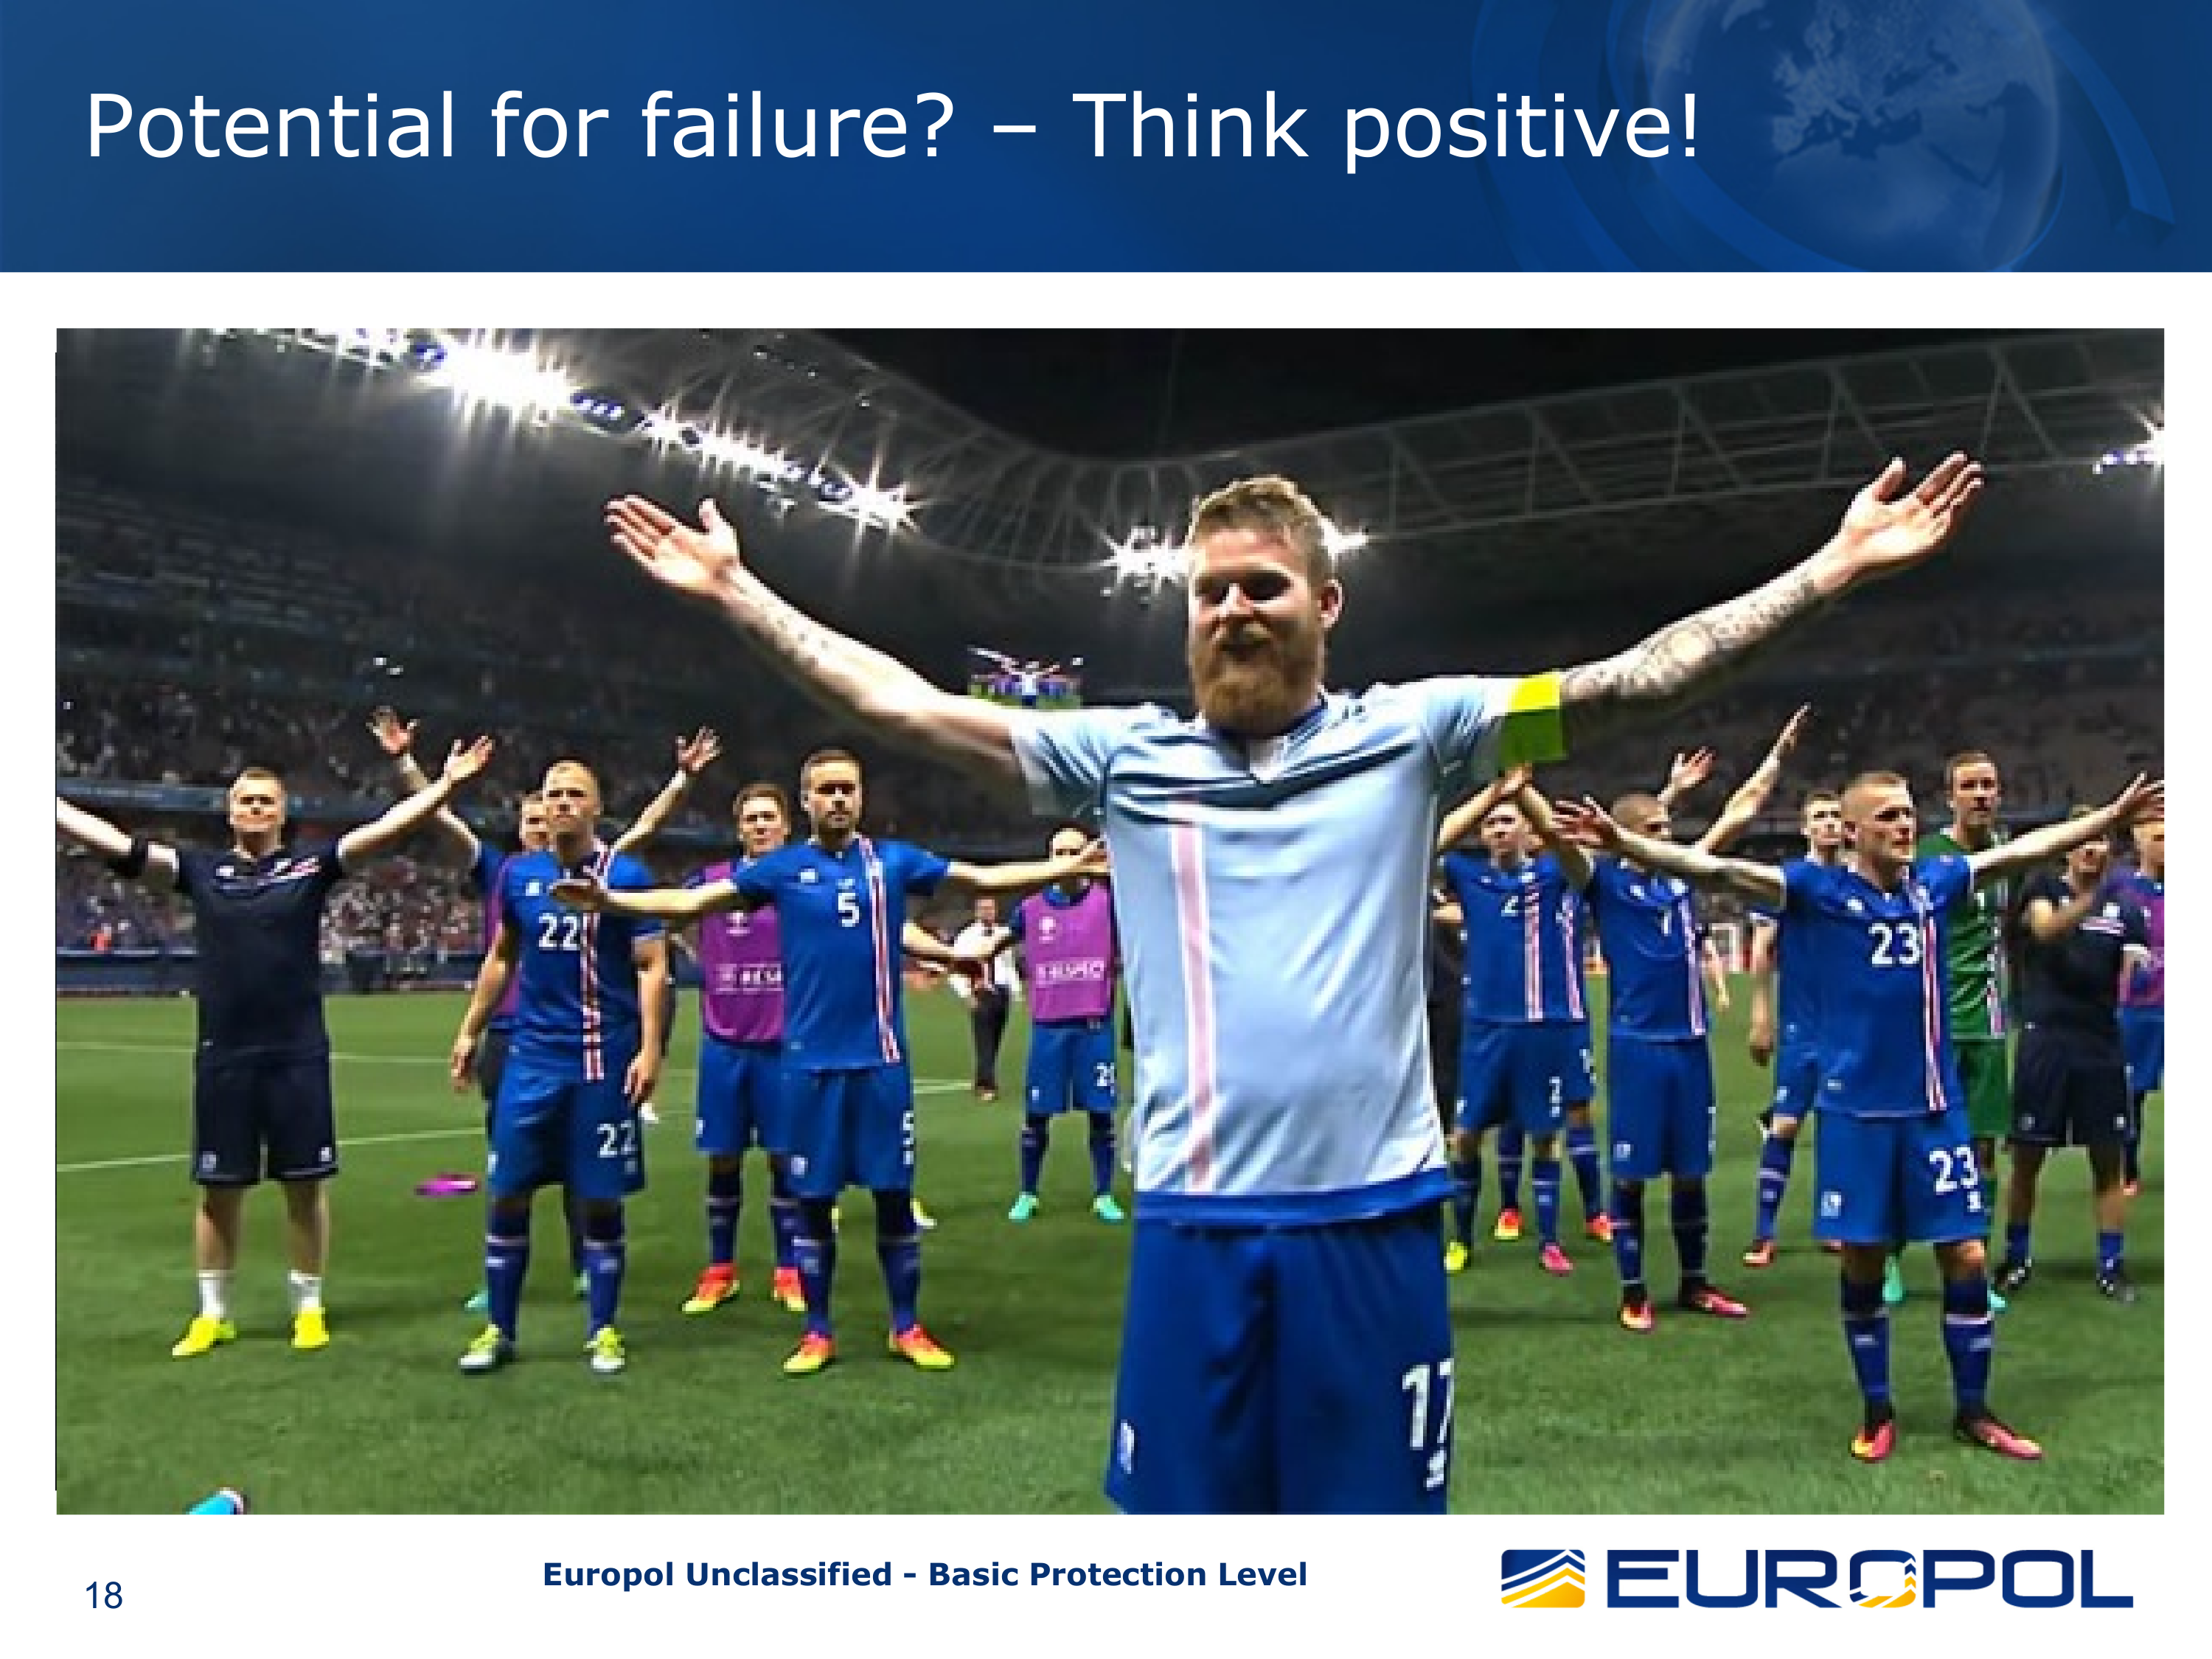 Aus der veröffentlichten Europol-Präsentation: Ein paar jubelnde Fußballfans unter der Überschrift: „Potential for failure? – Think positive!“